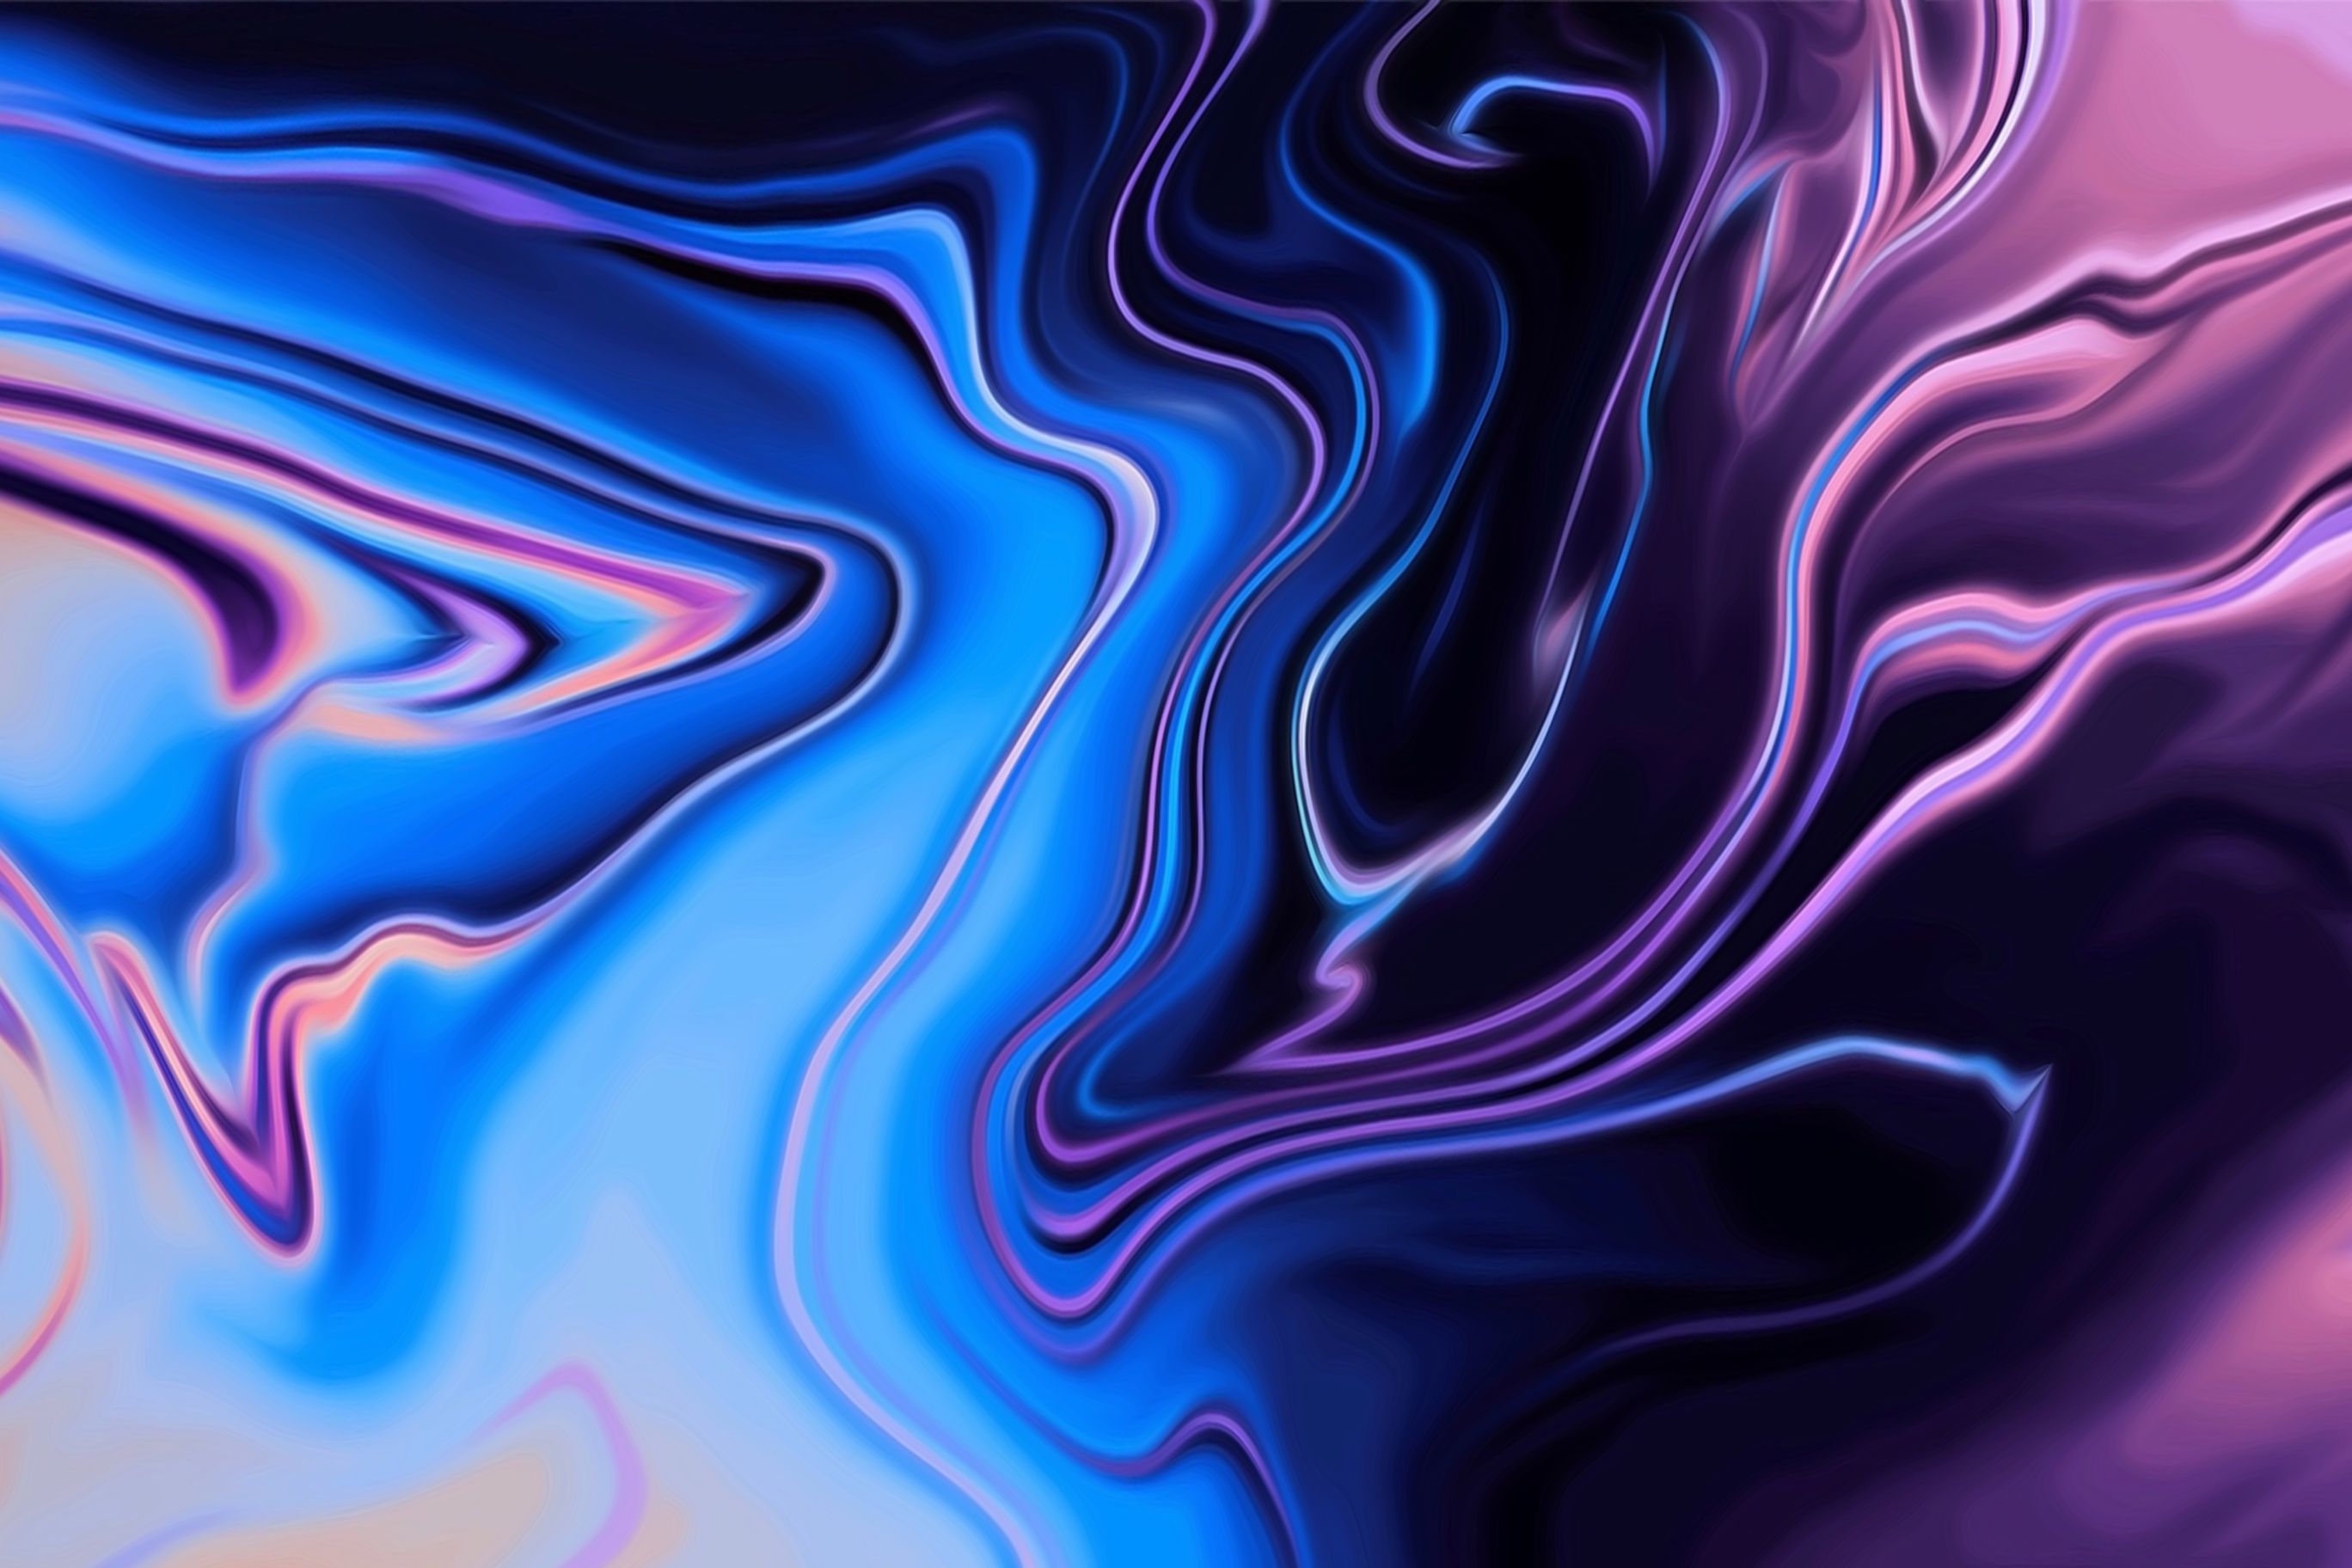 Liquid Texture Digital Artwork 5k Ultrahd Wallpaper - Apple Desktop Backgrounds 2018 , HD Wallpaper & Backgrounds